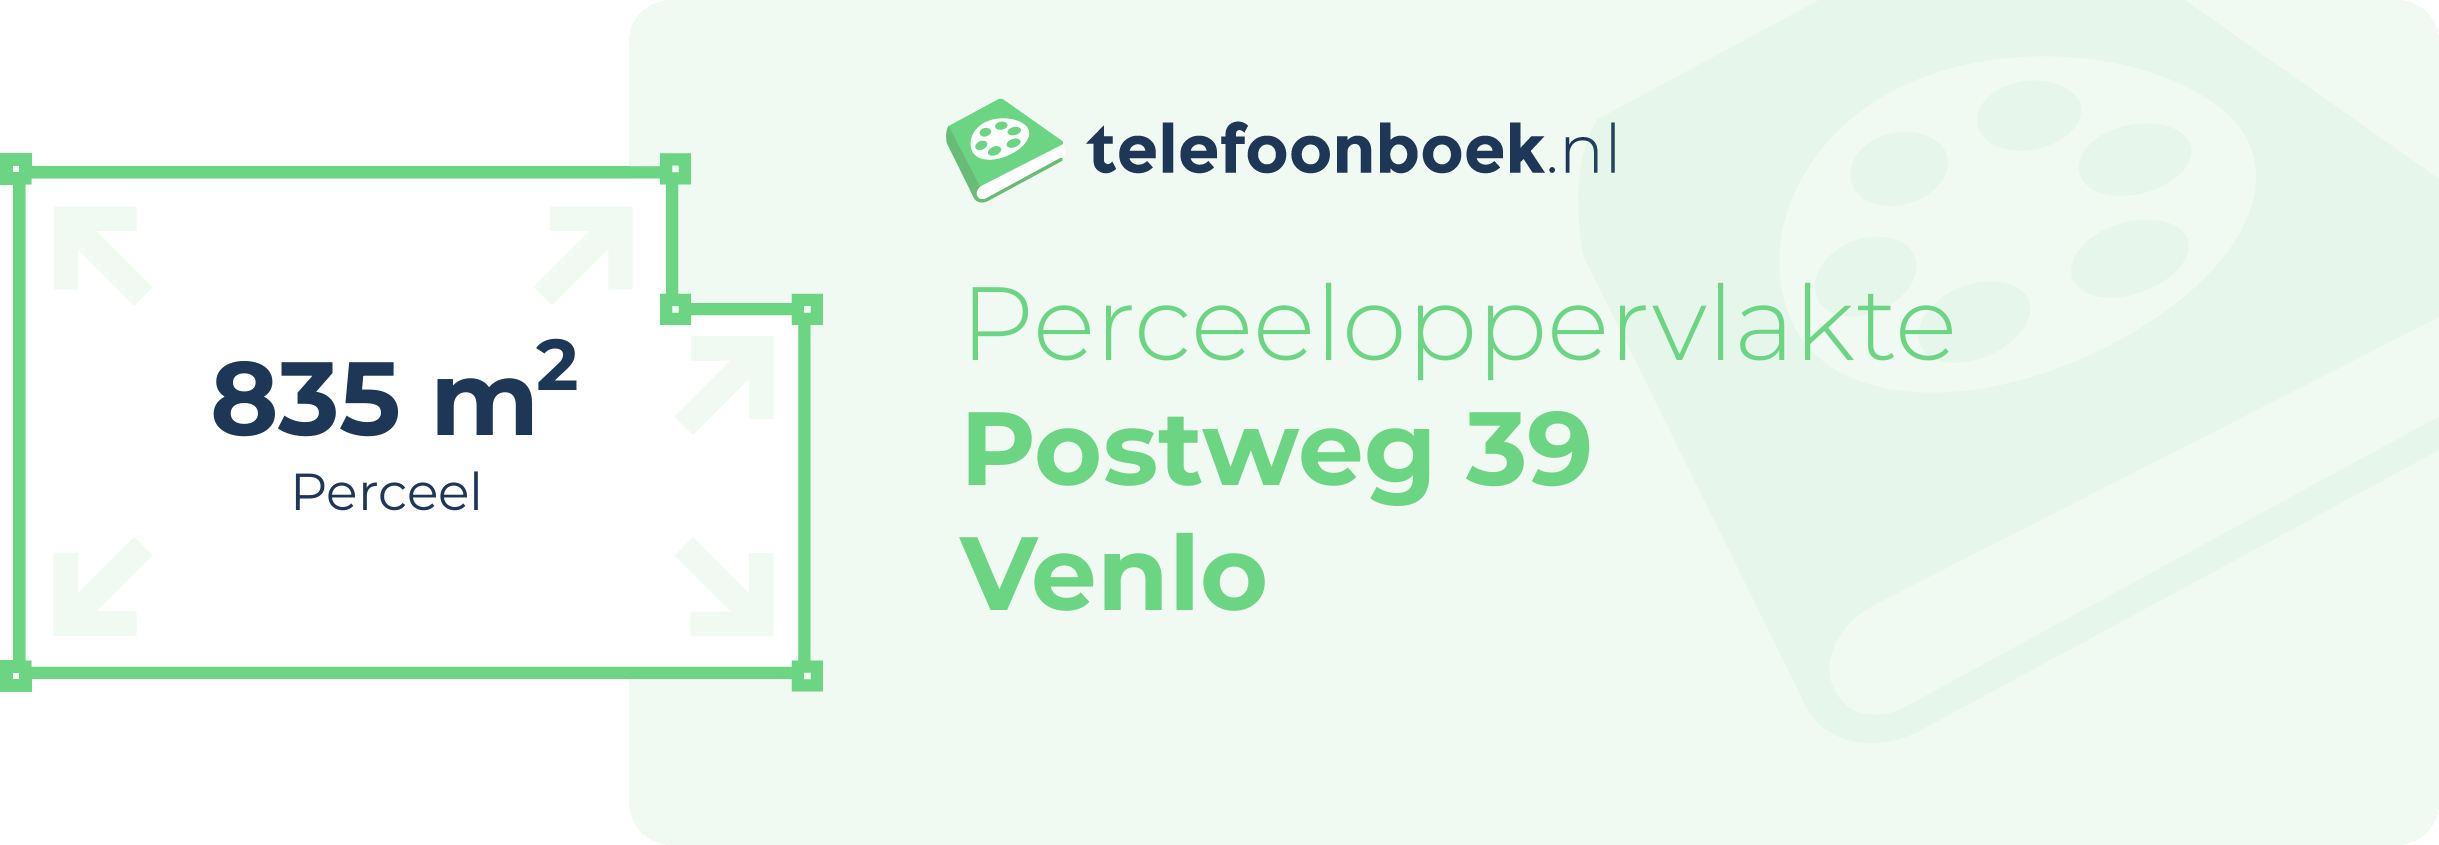 Perceeloppervlakte Postweg 39 Venlo